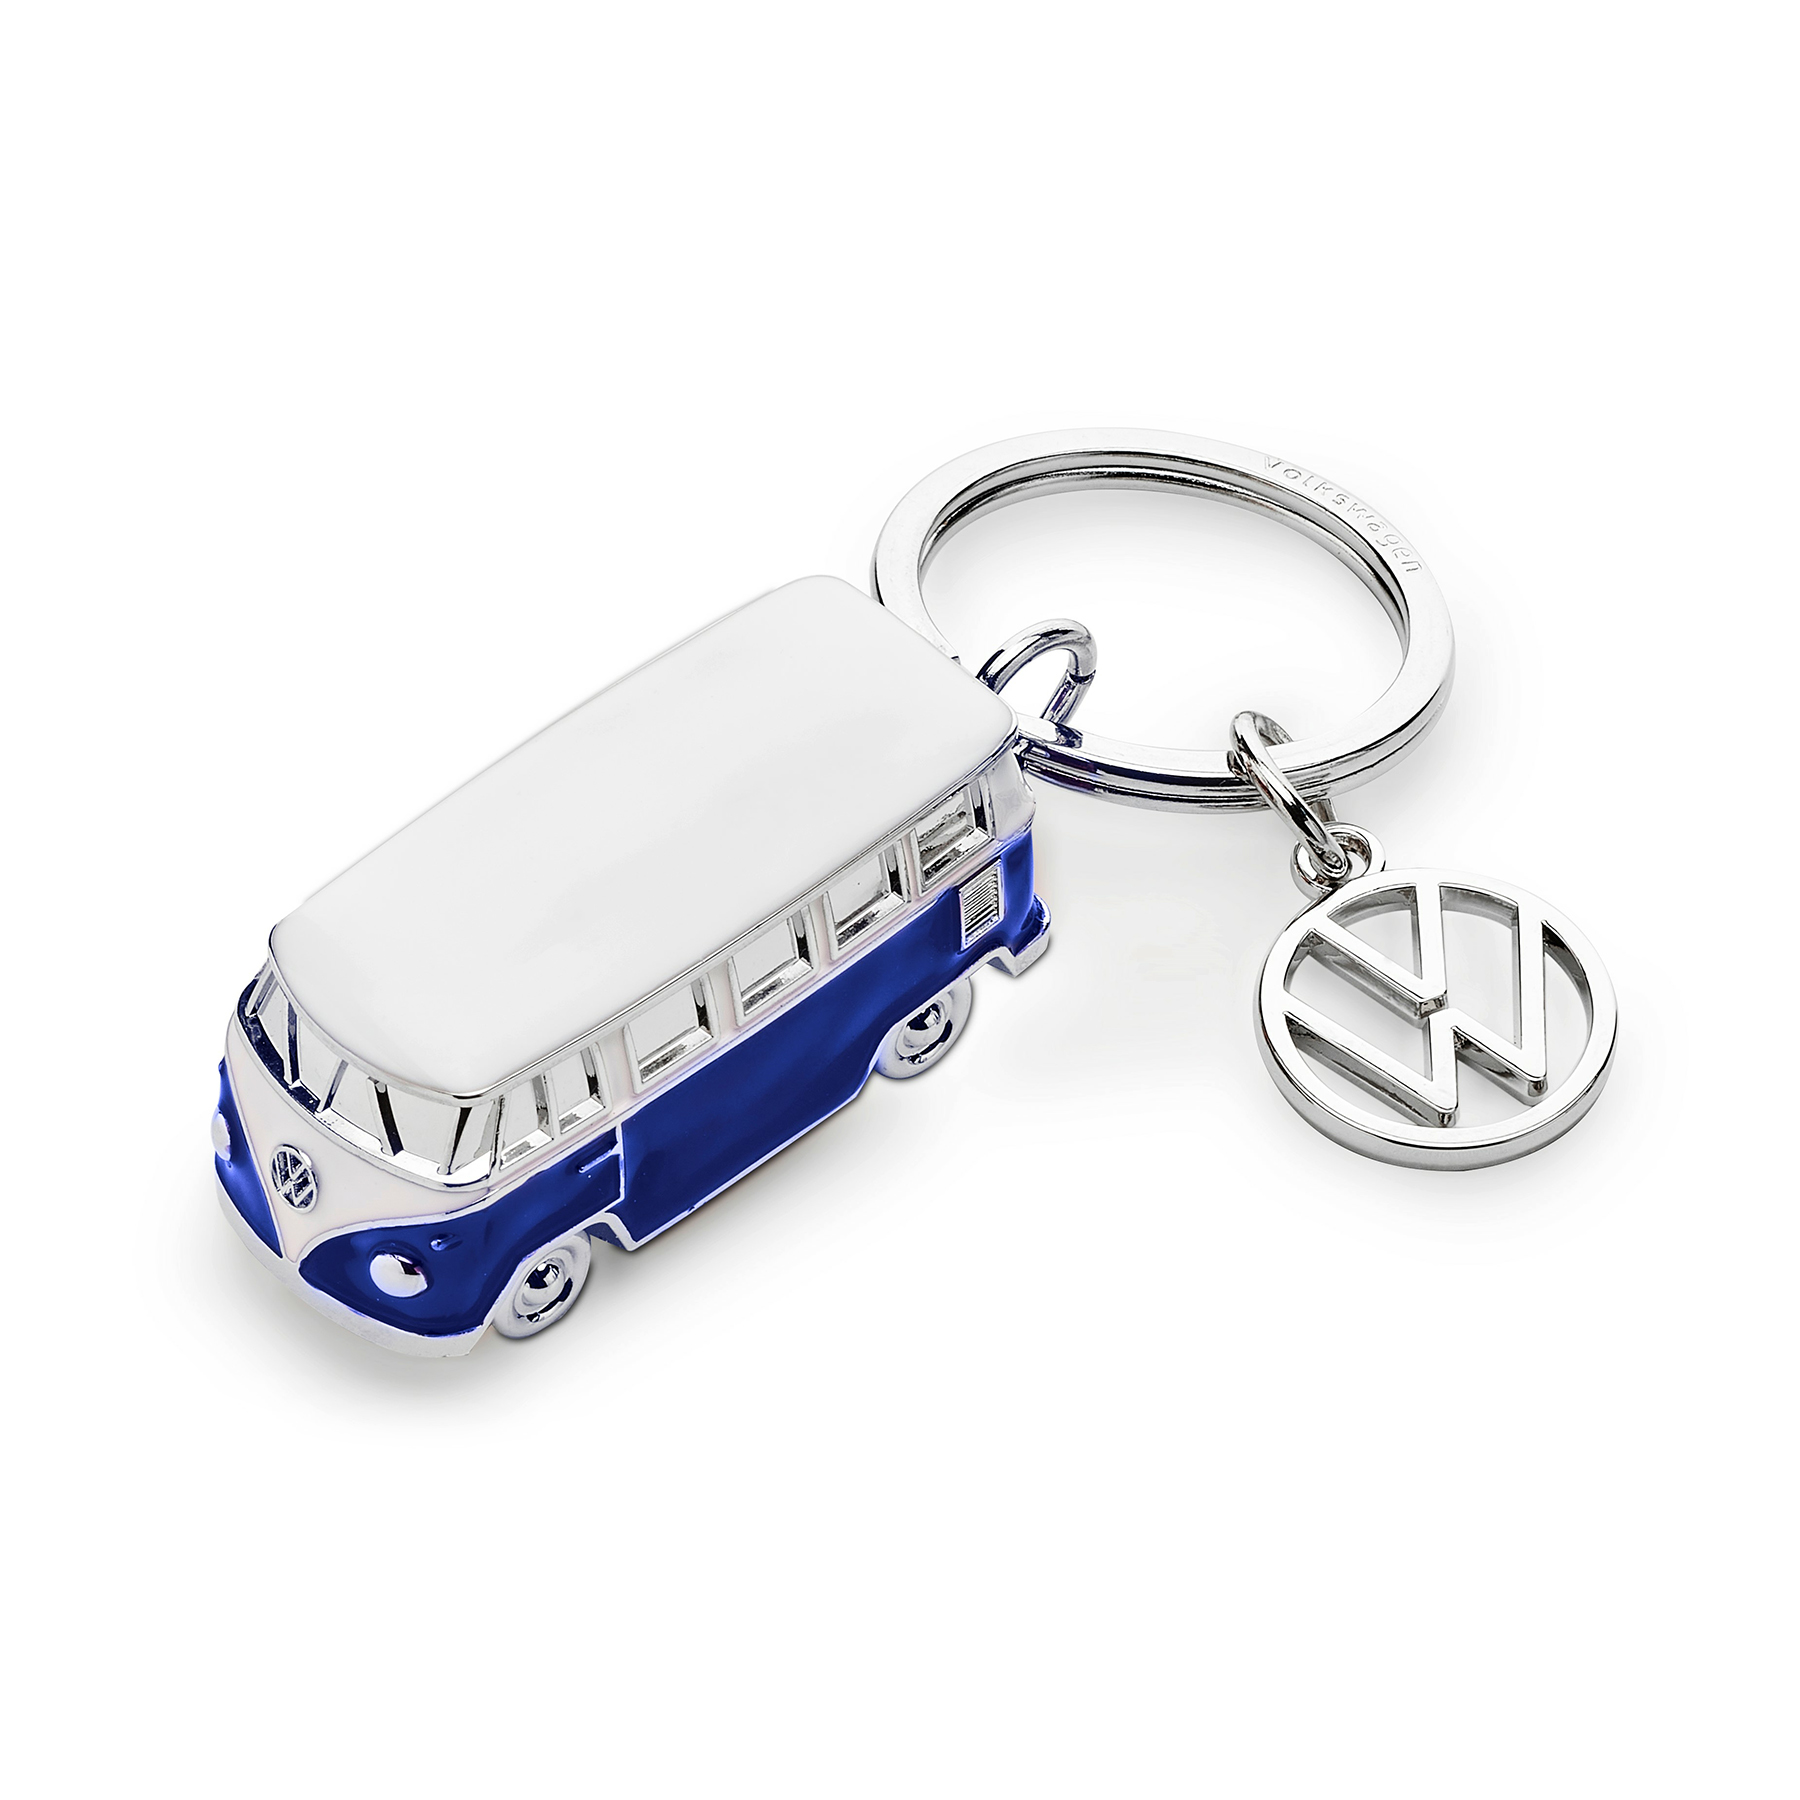 VW Bulli T1 SchlüsselanhängerHELLBLAU BEIGE MetallVolkswagen Lizenzware 